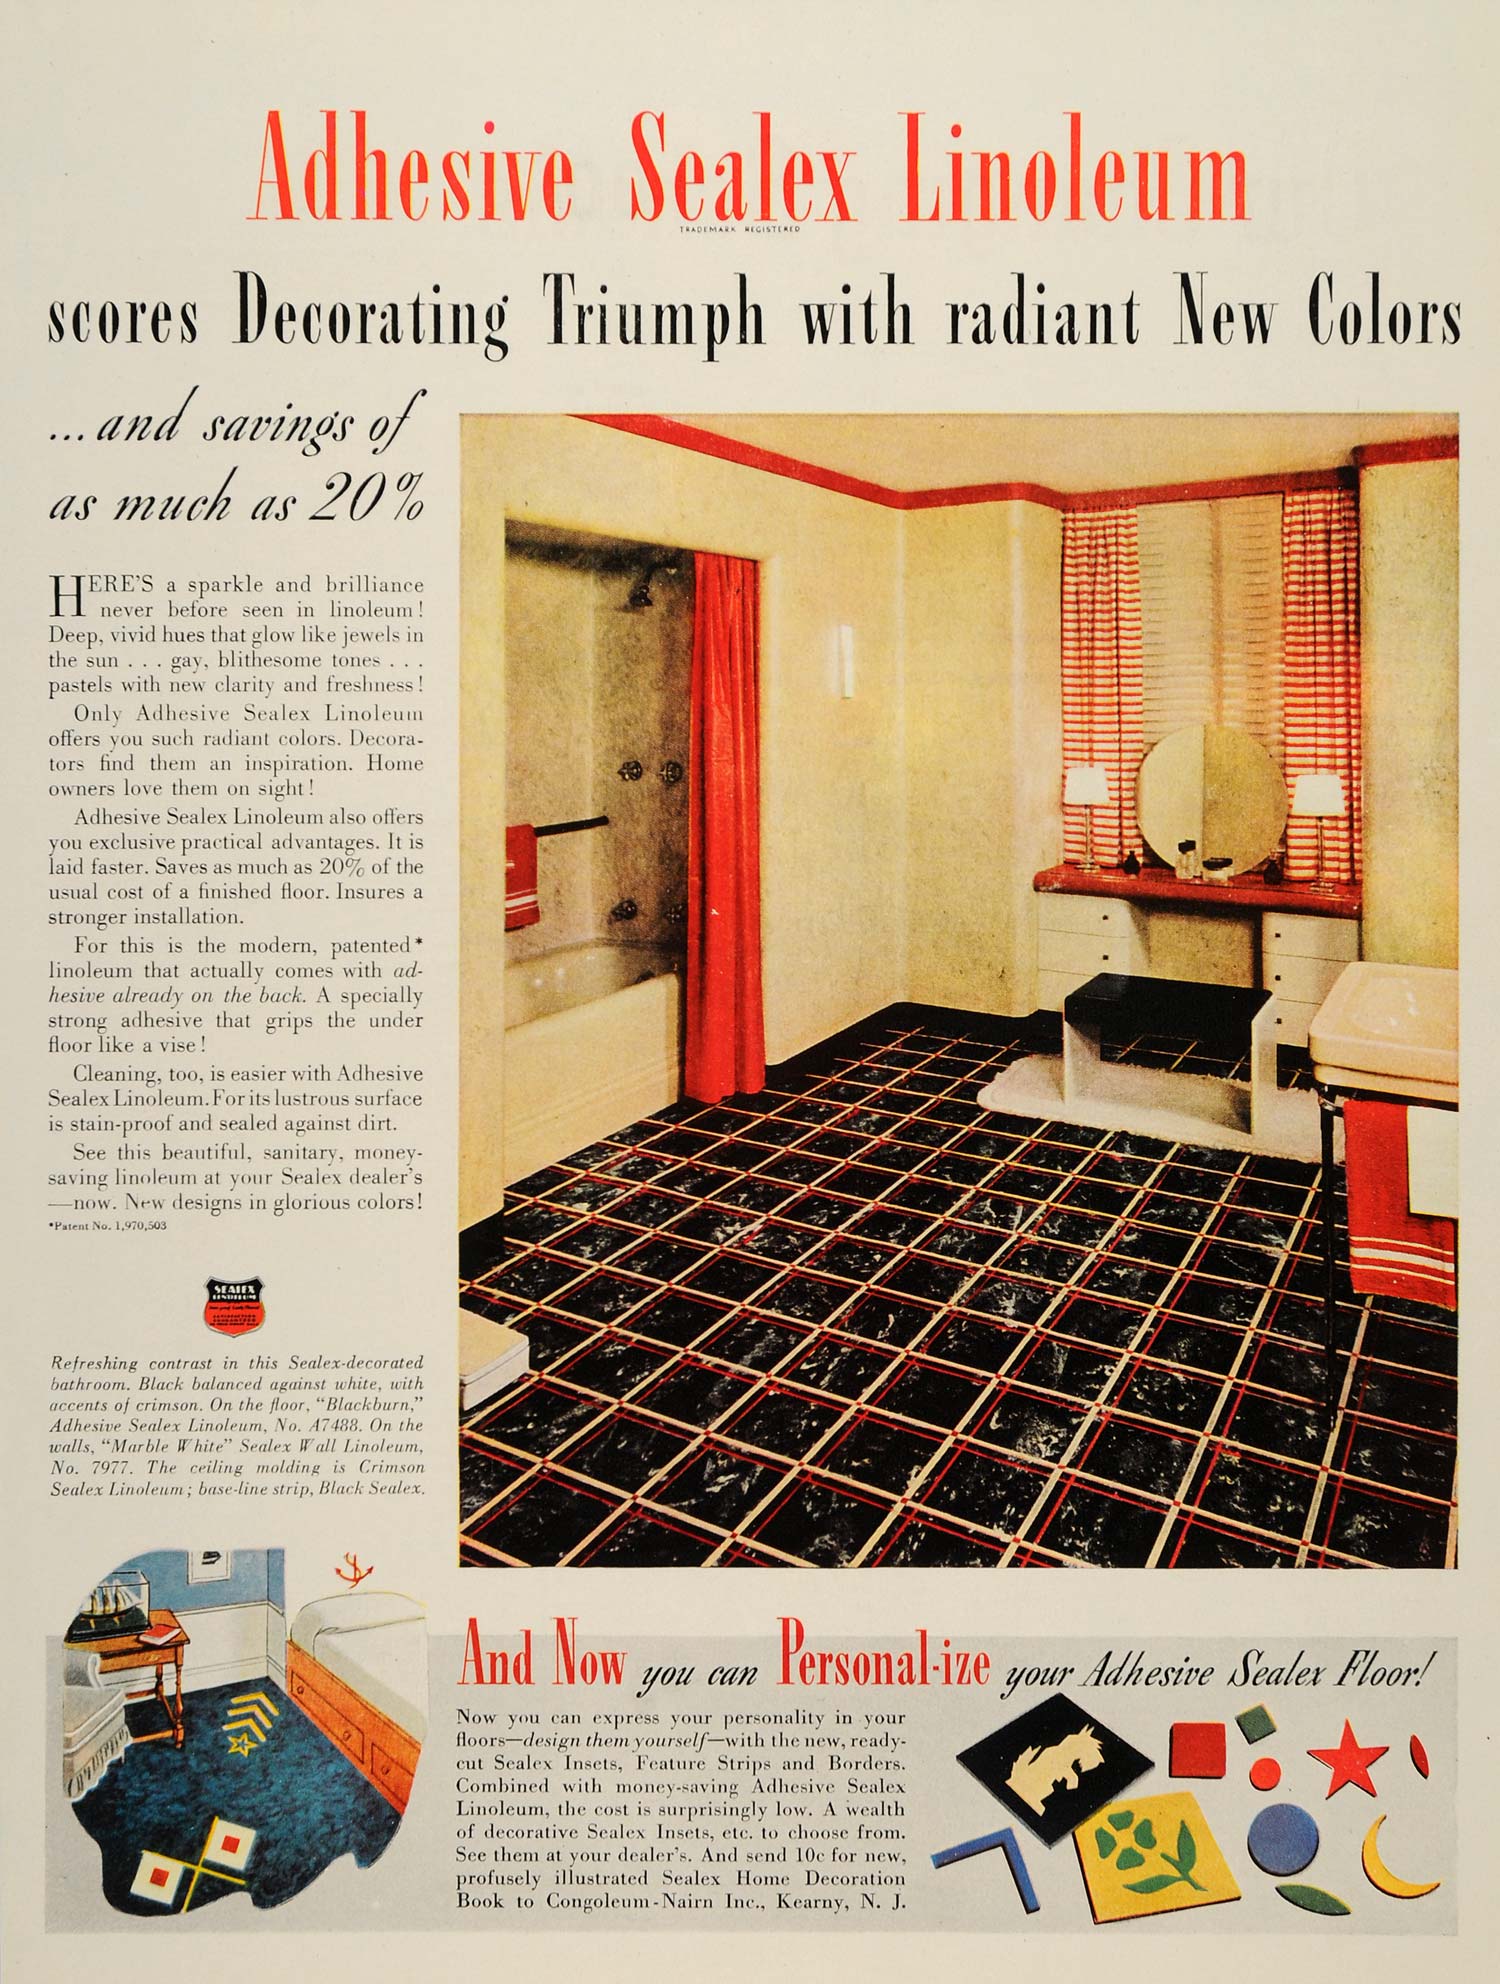 1937 Ad Congoleum-Nairn Adhesive Sealex Linoleum Floors - ORIGINAL WH1